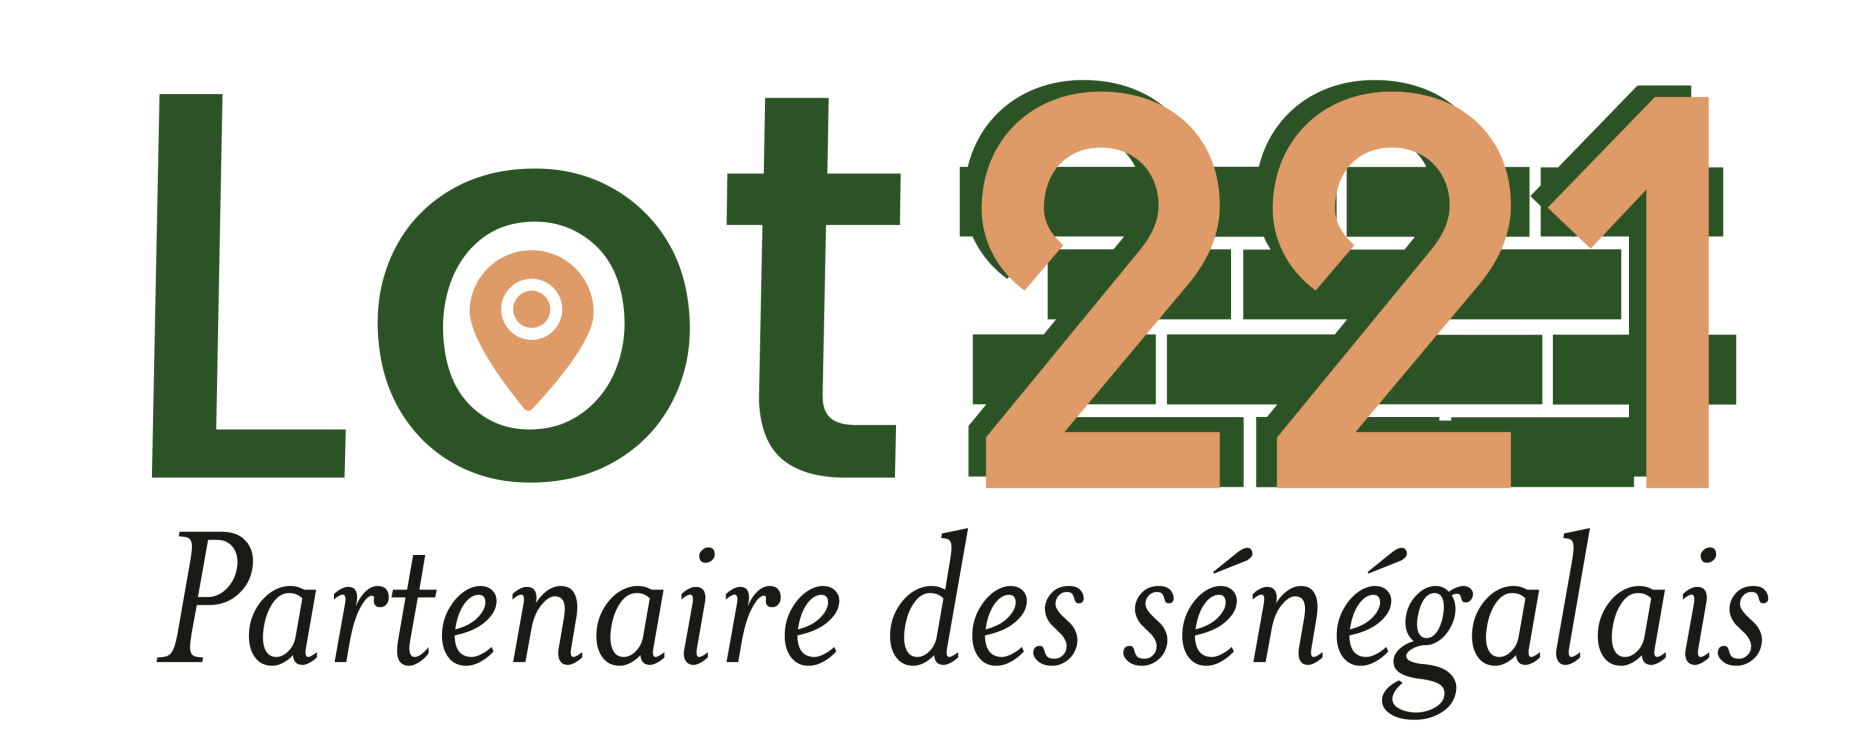 Un logo pour le lot 221 partenariat des sénégalais